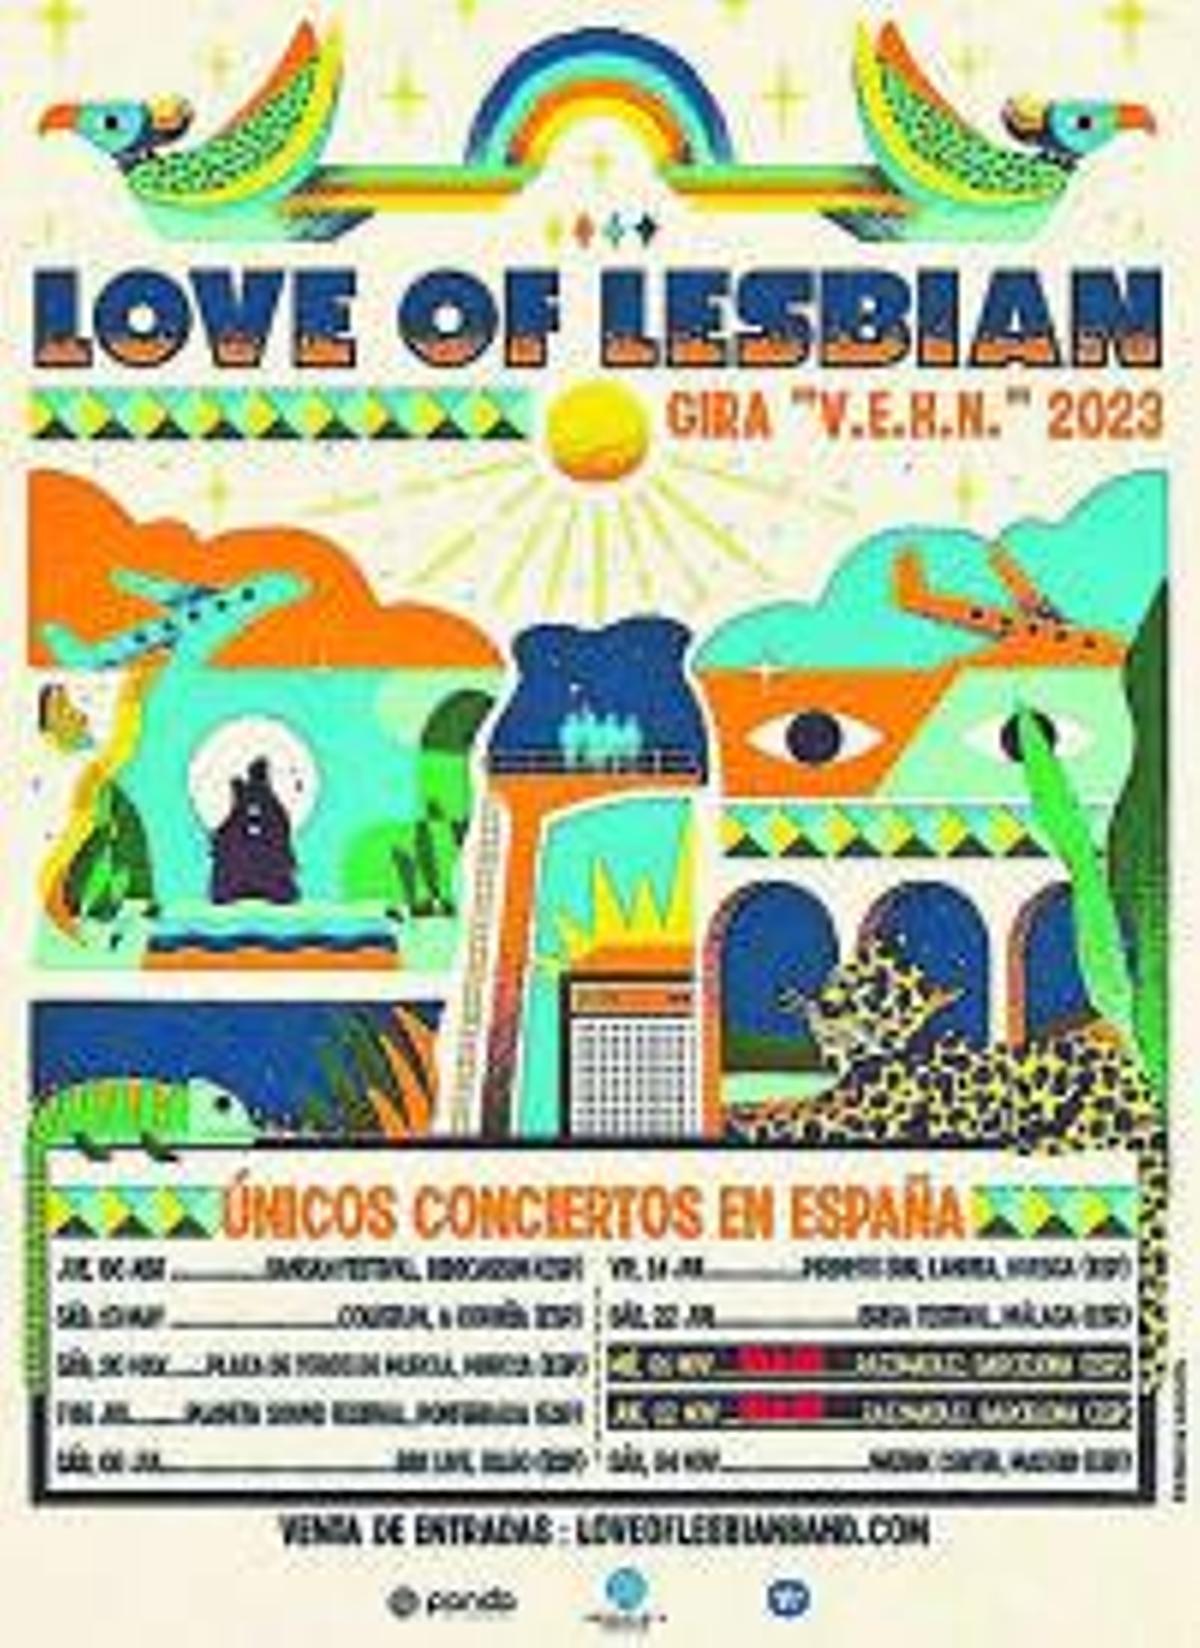 La artista que pone color a Rozalén y Love of Lesbian